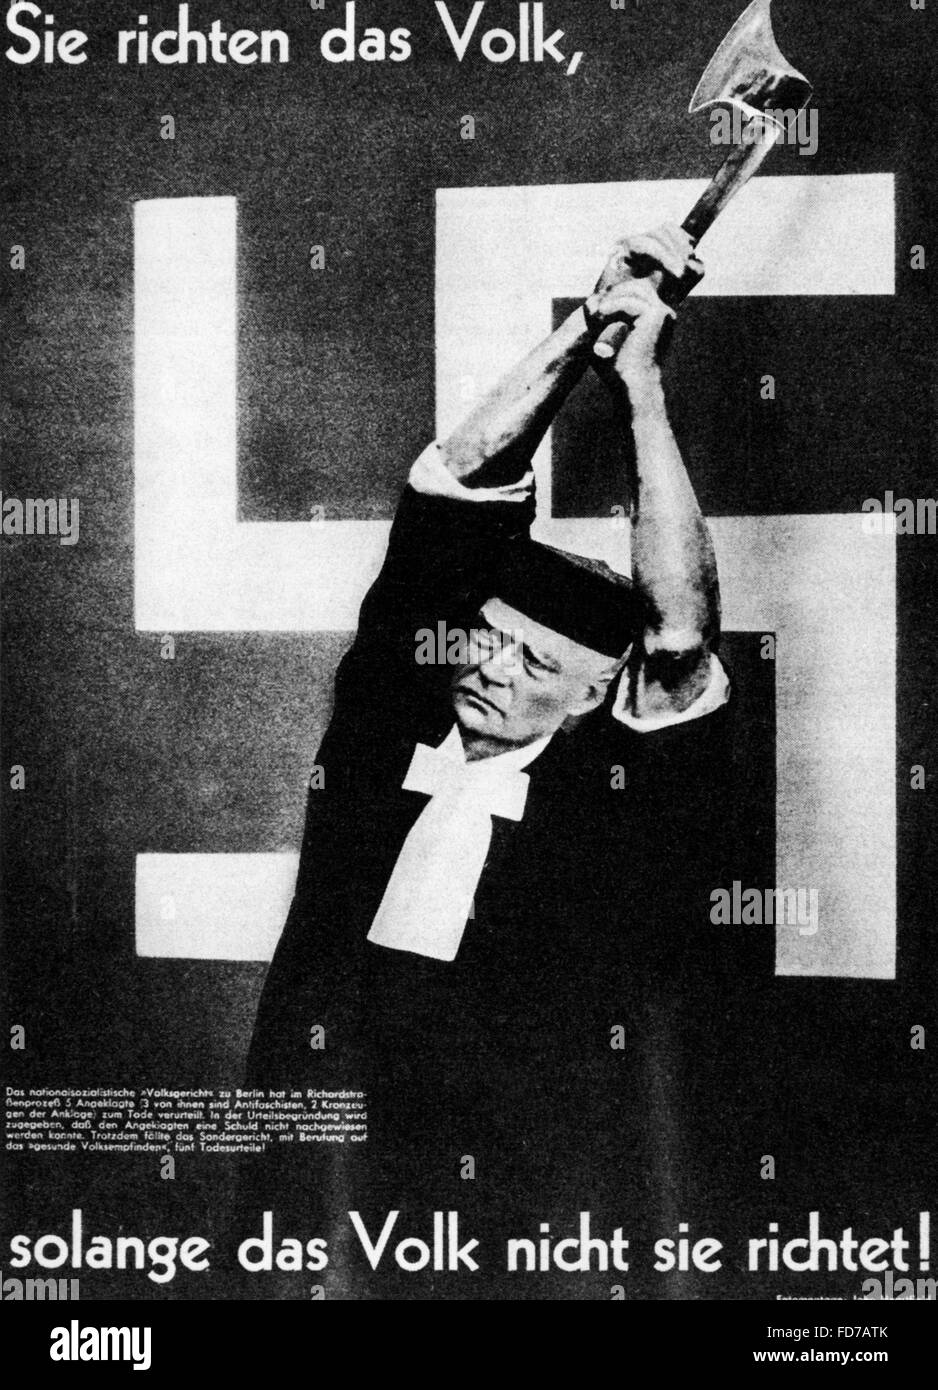 Heartfield fotomontaje sobre la justicia en la Alemania Nazi, 1936 Foto de stock